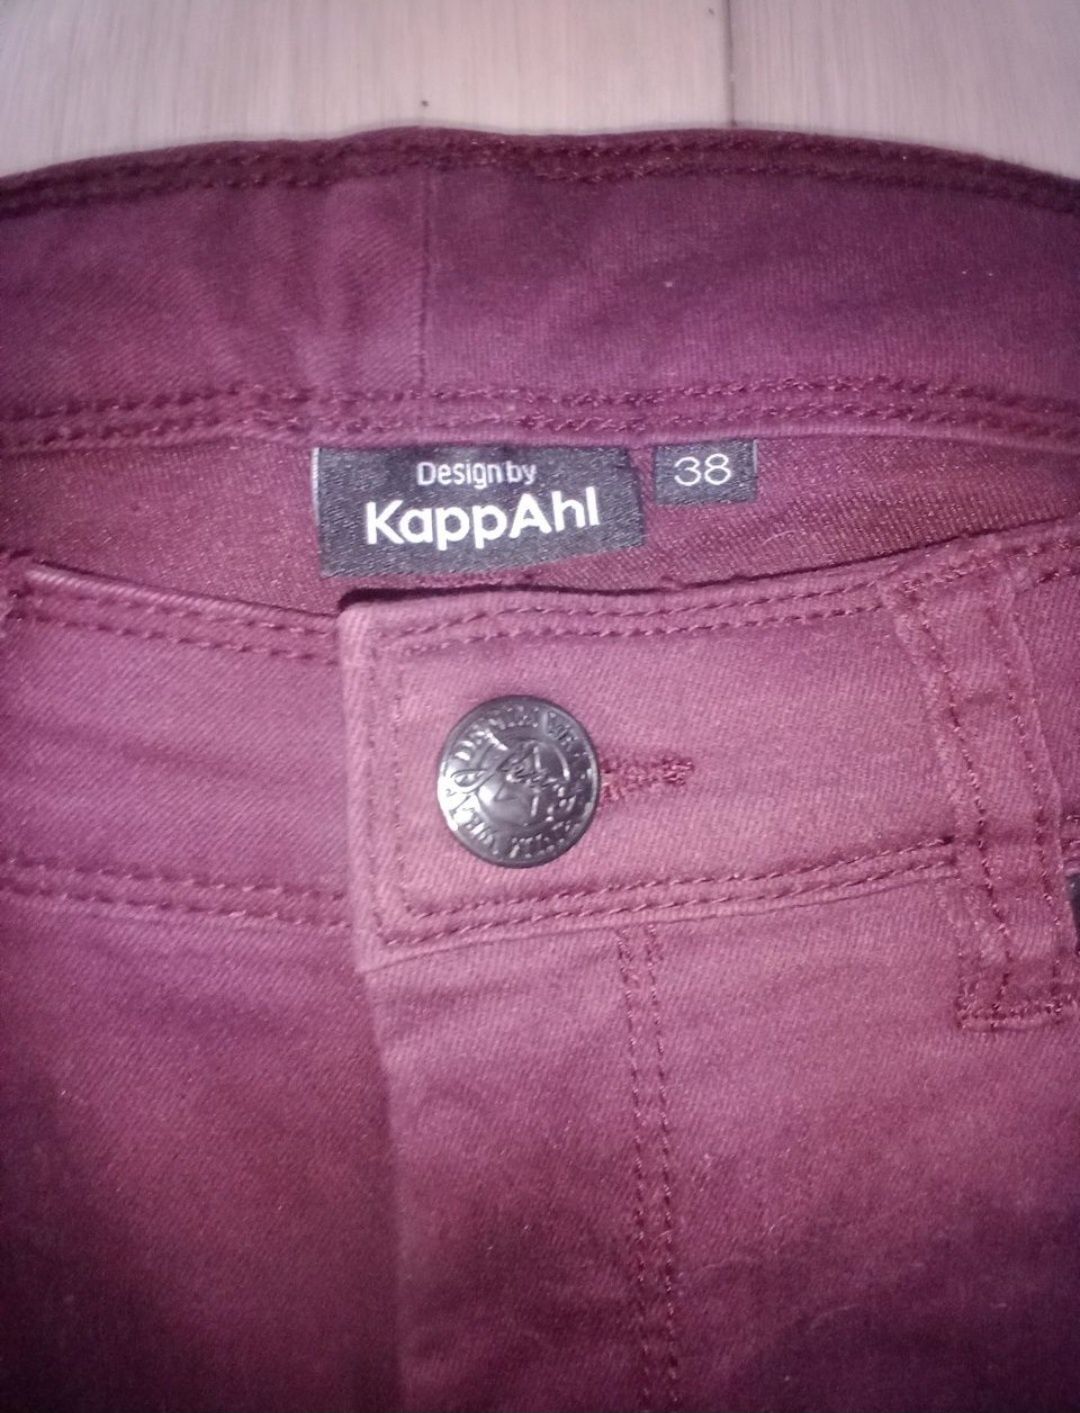 Spodnie damskie KappAhl, skinny, rozm. 38, NOWE.